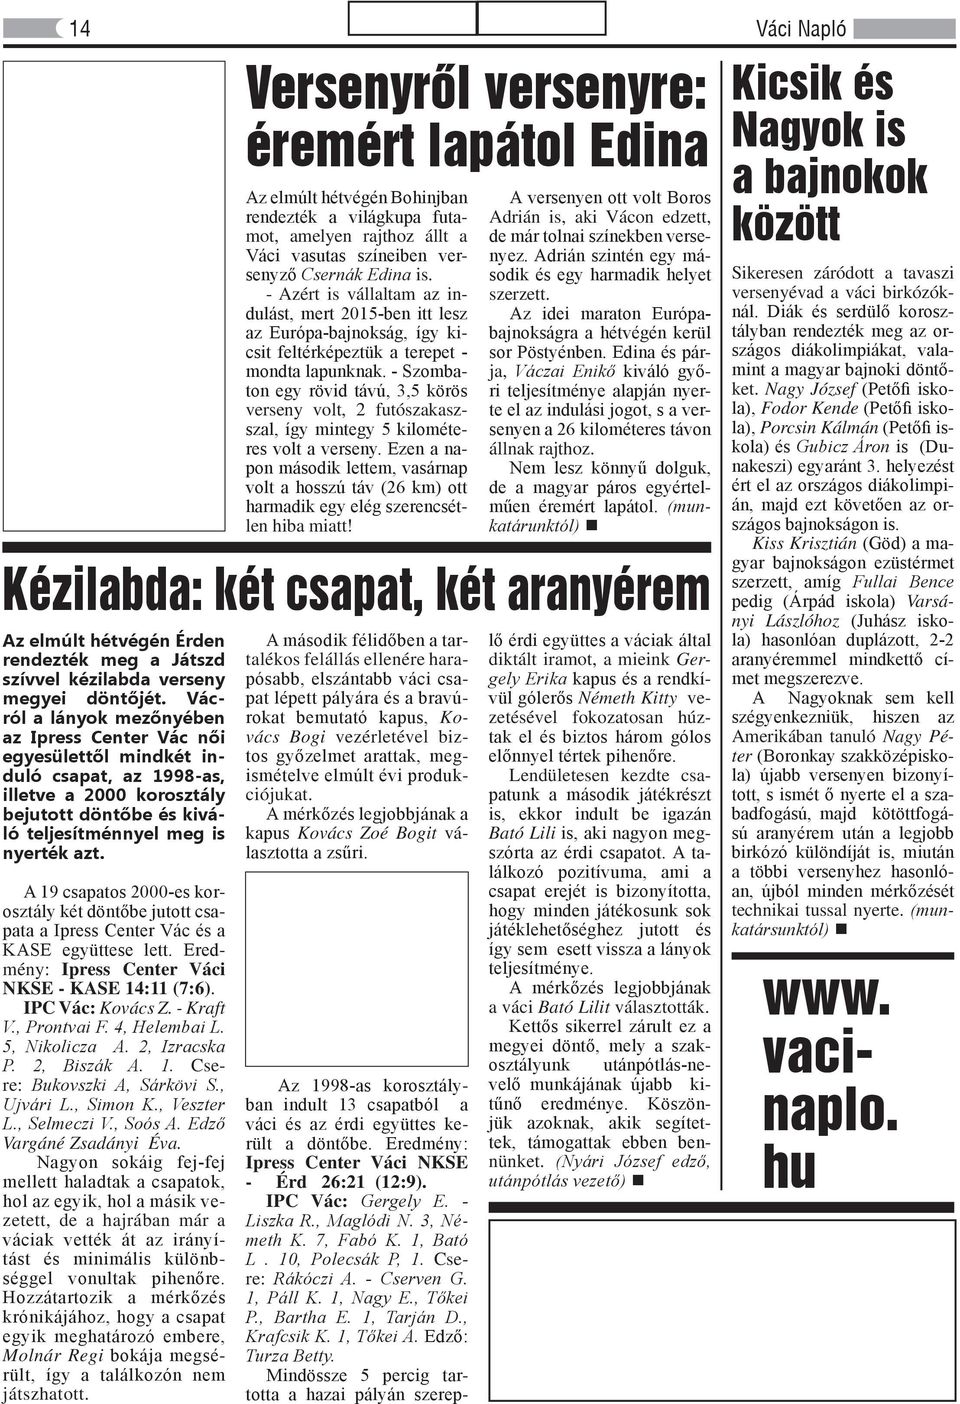 A 19 csapatos 2000-es korosztály két döntőbe jutott csapata a Ipress Center Vác és a KASE együttese lett. Eredmény: Ipress Center Váci NKSE - KASE 14:11 (7:6). IPC Vác: Kovács Z. - Kraft V.